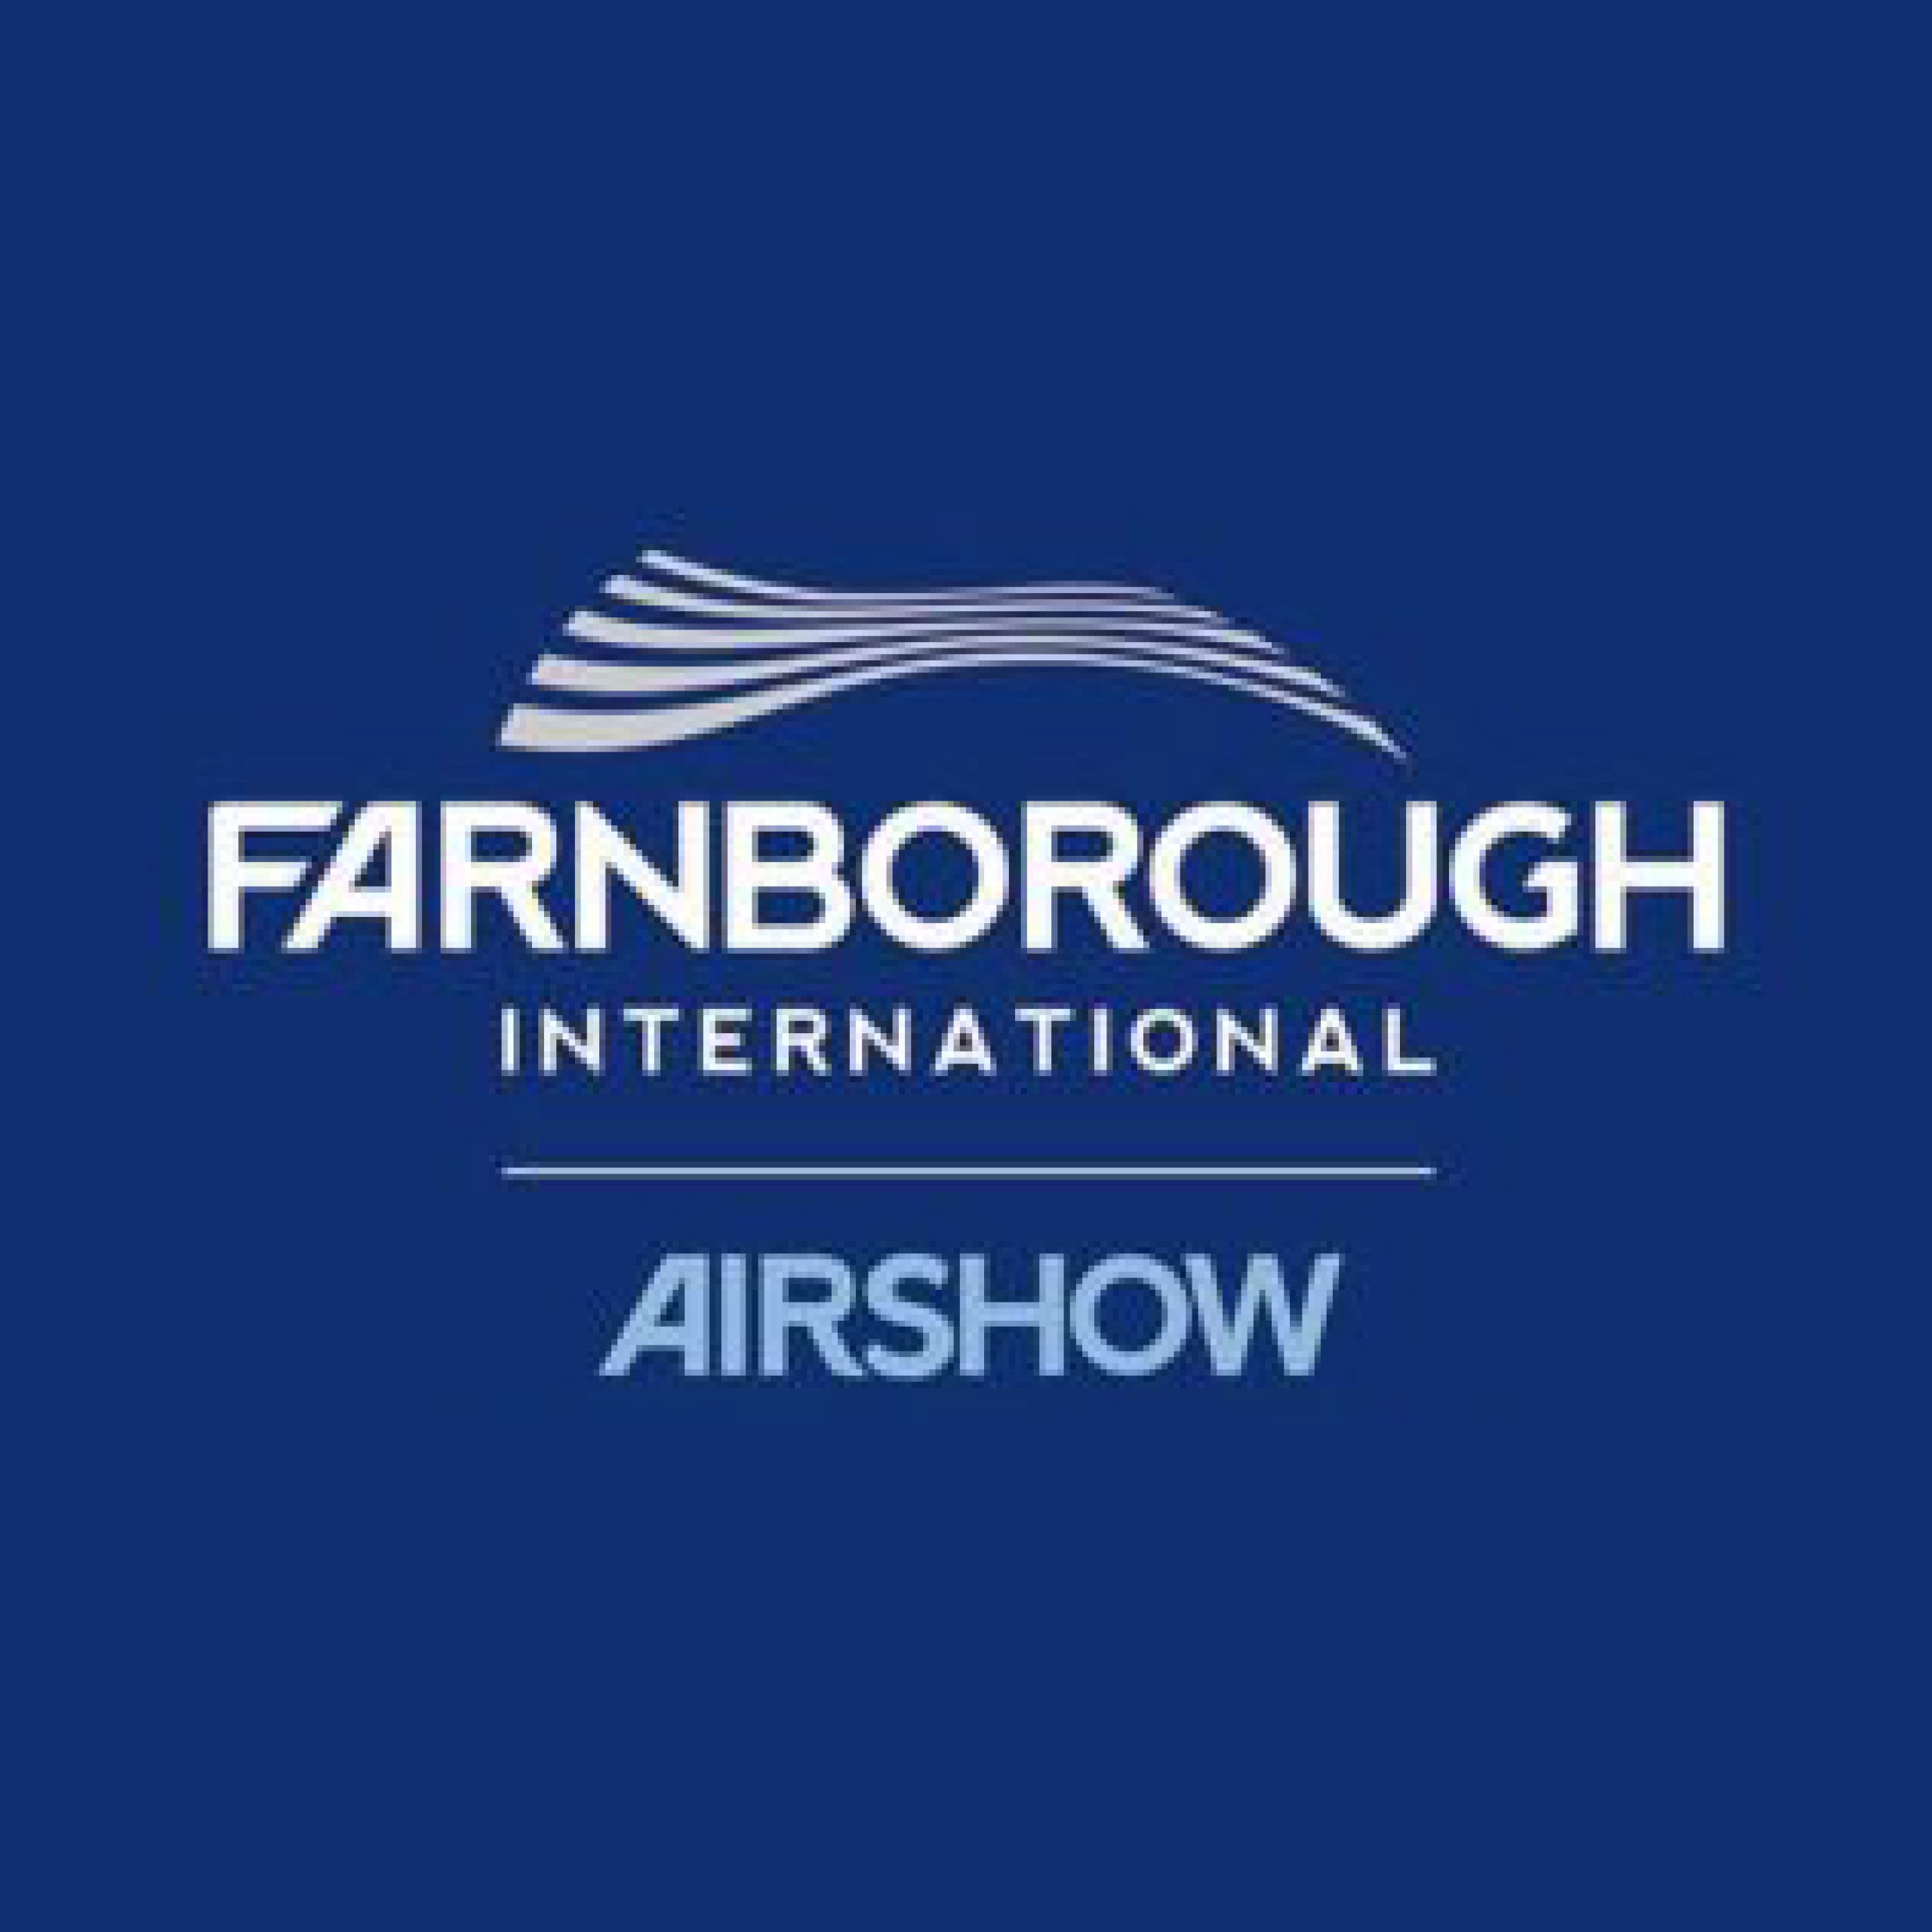 Farnborough Airshow 2024